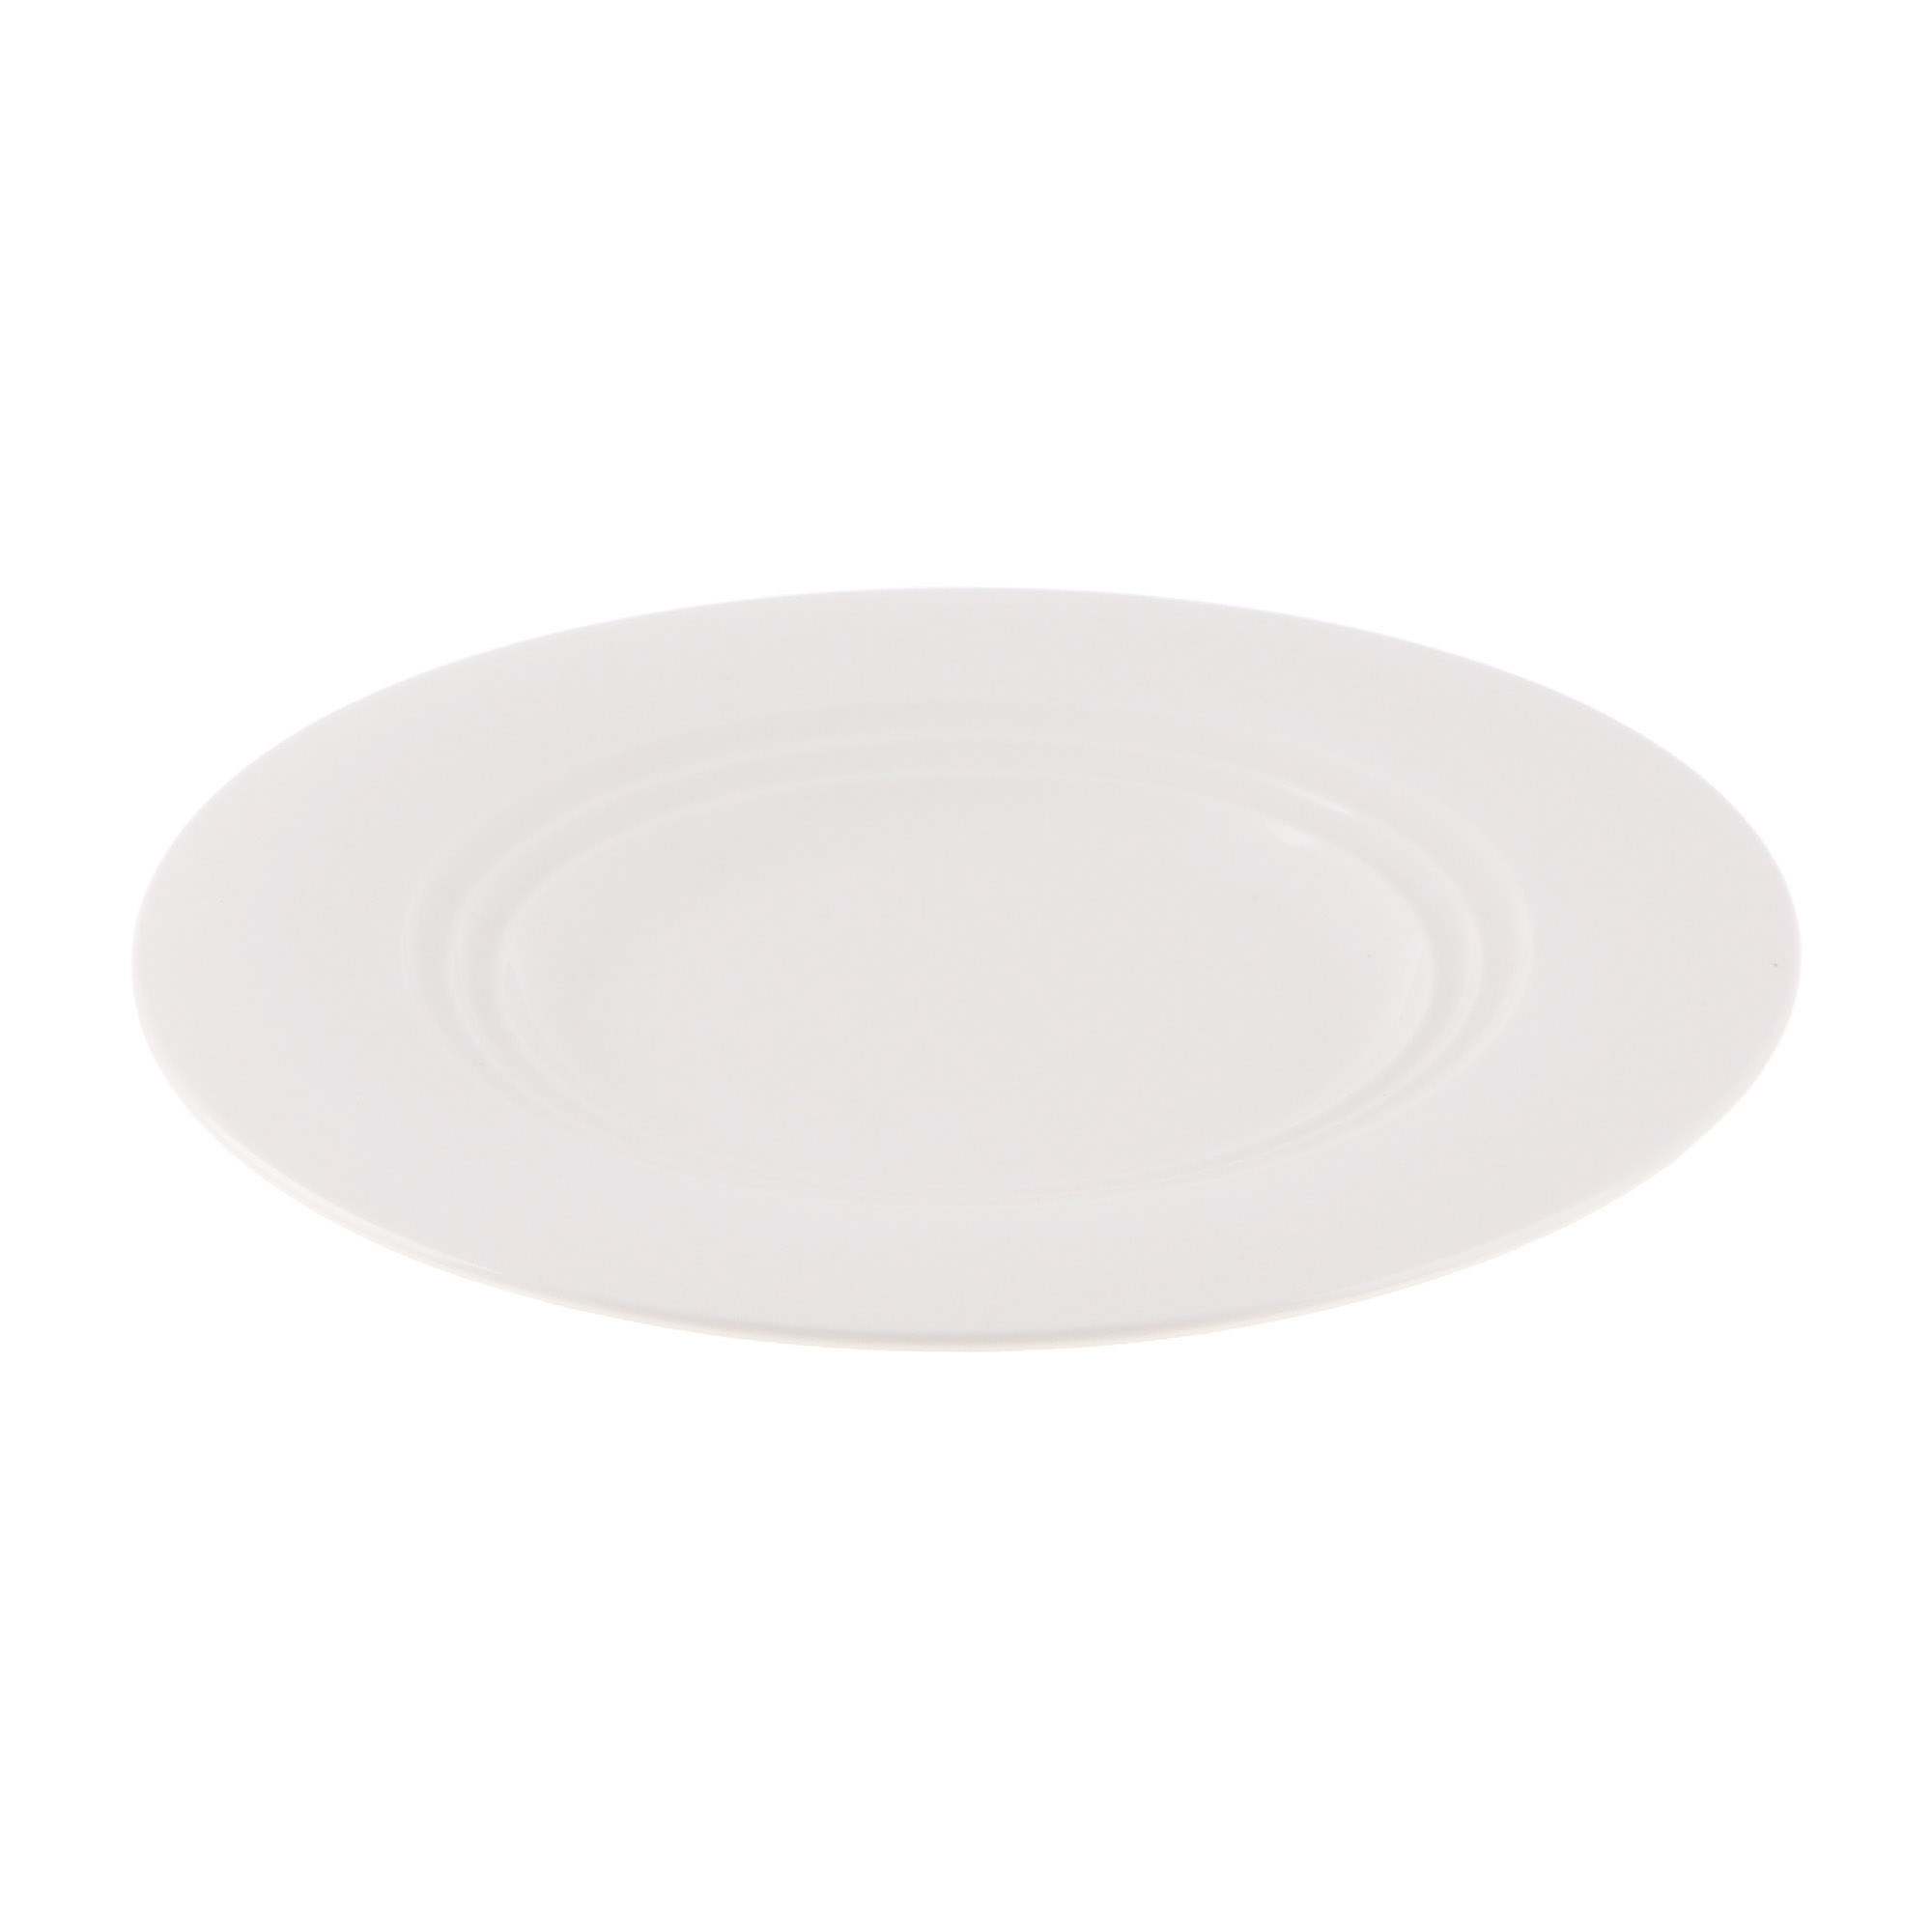 Тарелка Cameo Concentrics фарфор 21 см тарелка cameo imperial white d30 5 см 210 121